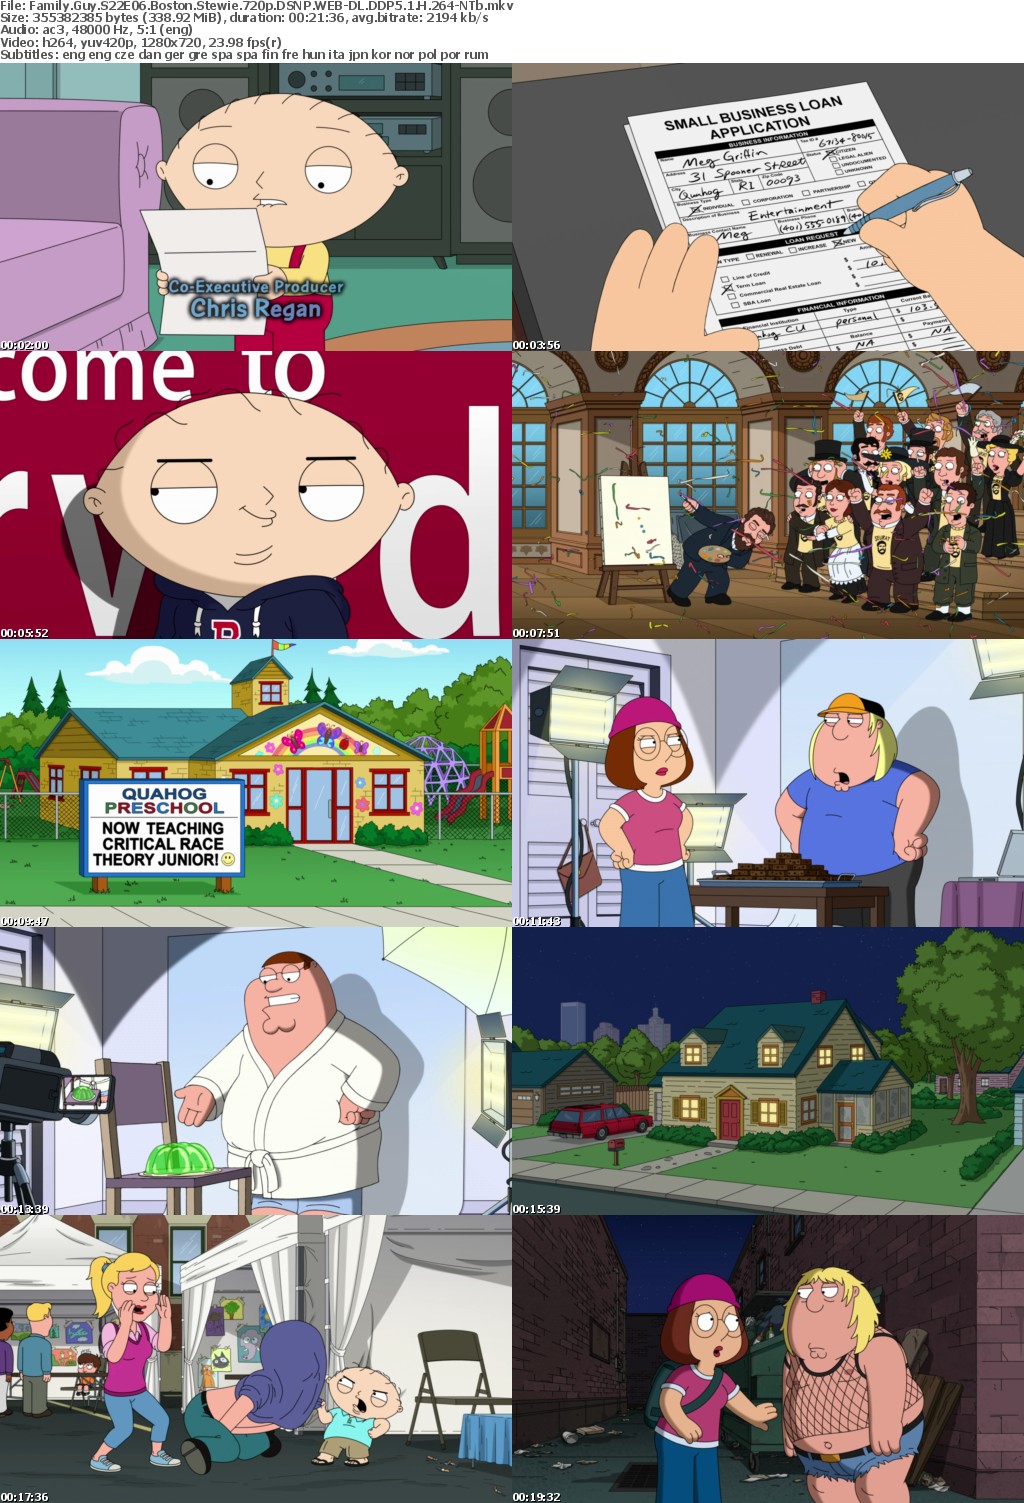 Family Guy S22E06 Boston Stewie 720p DSNP WEB-DL DDP5 1 H 264-NTb